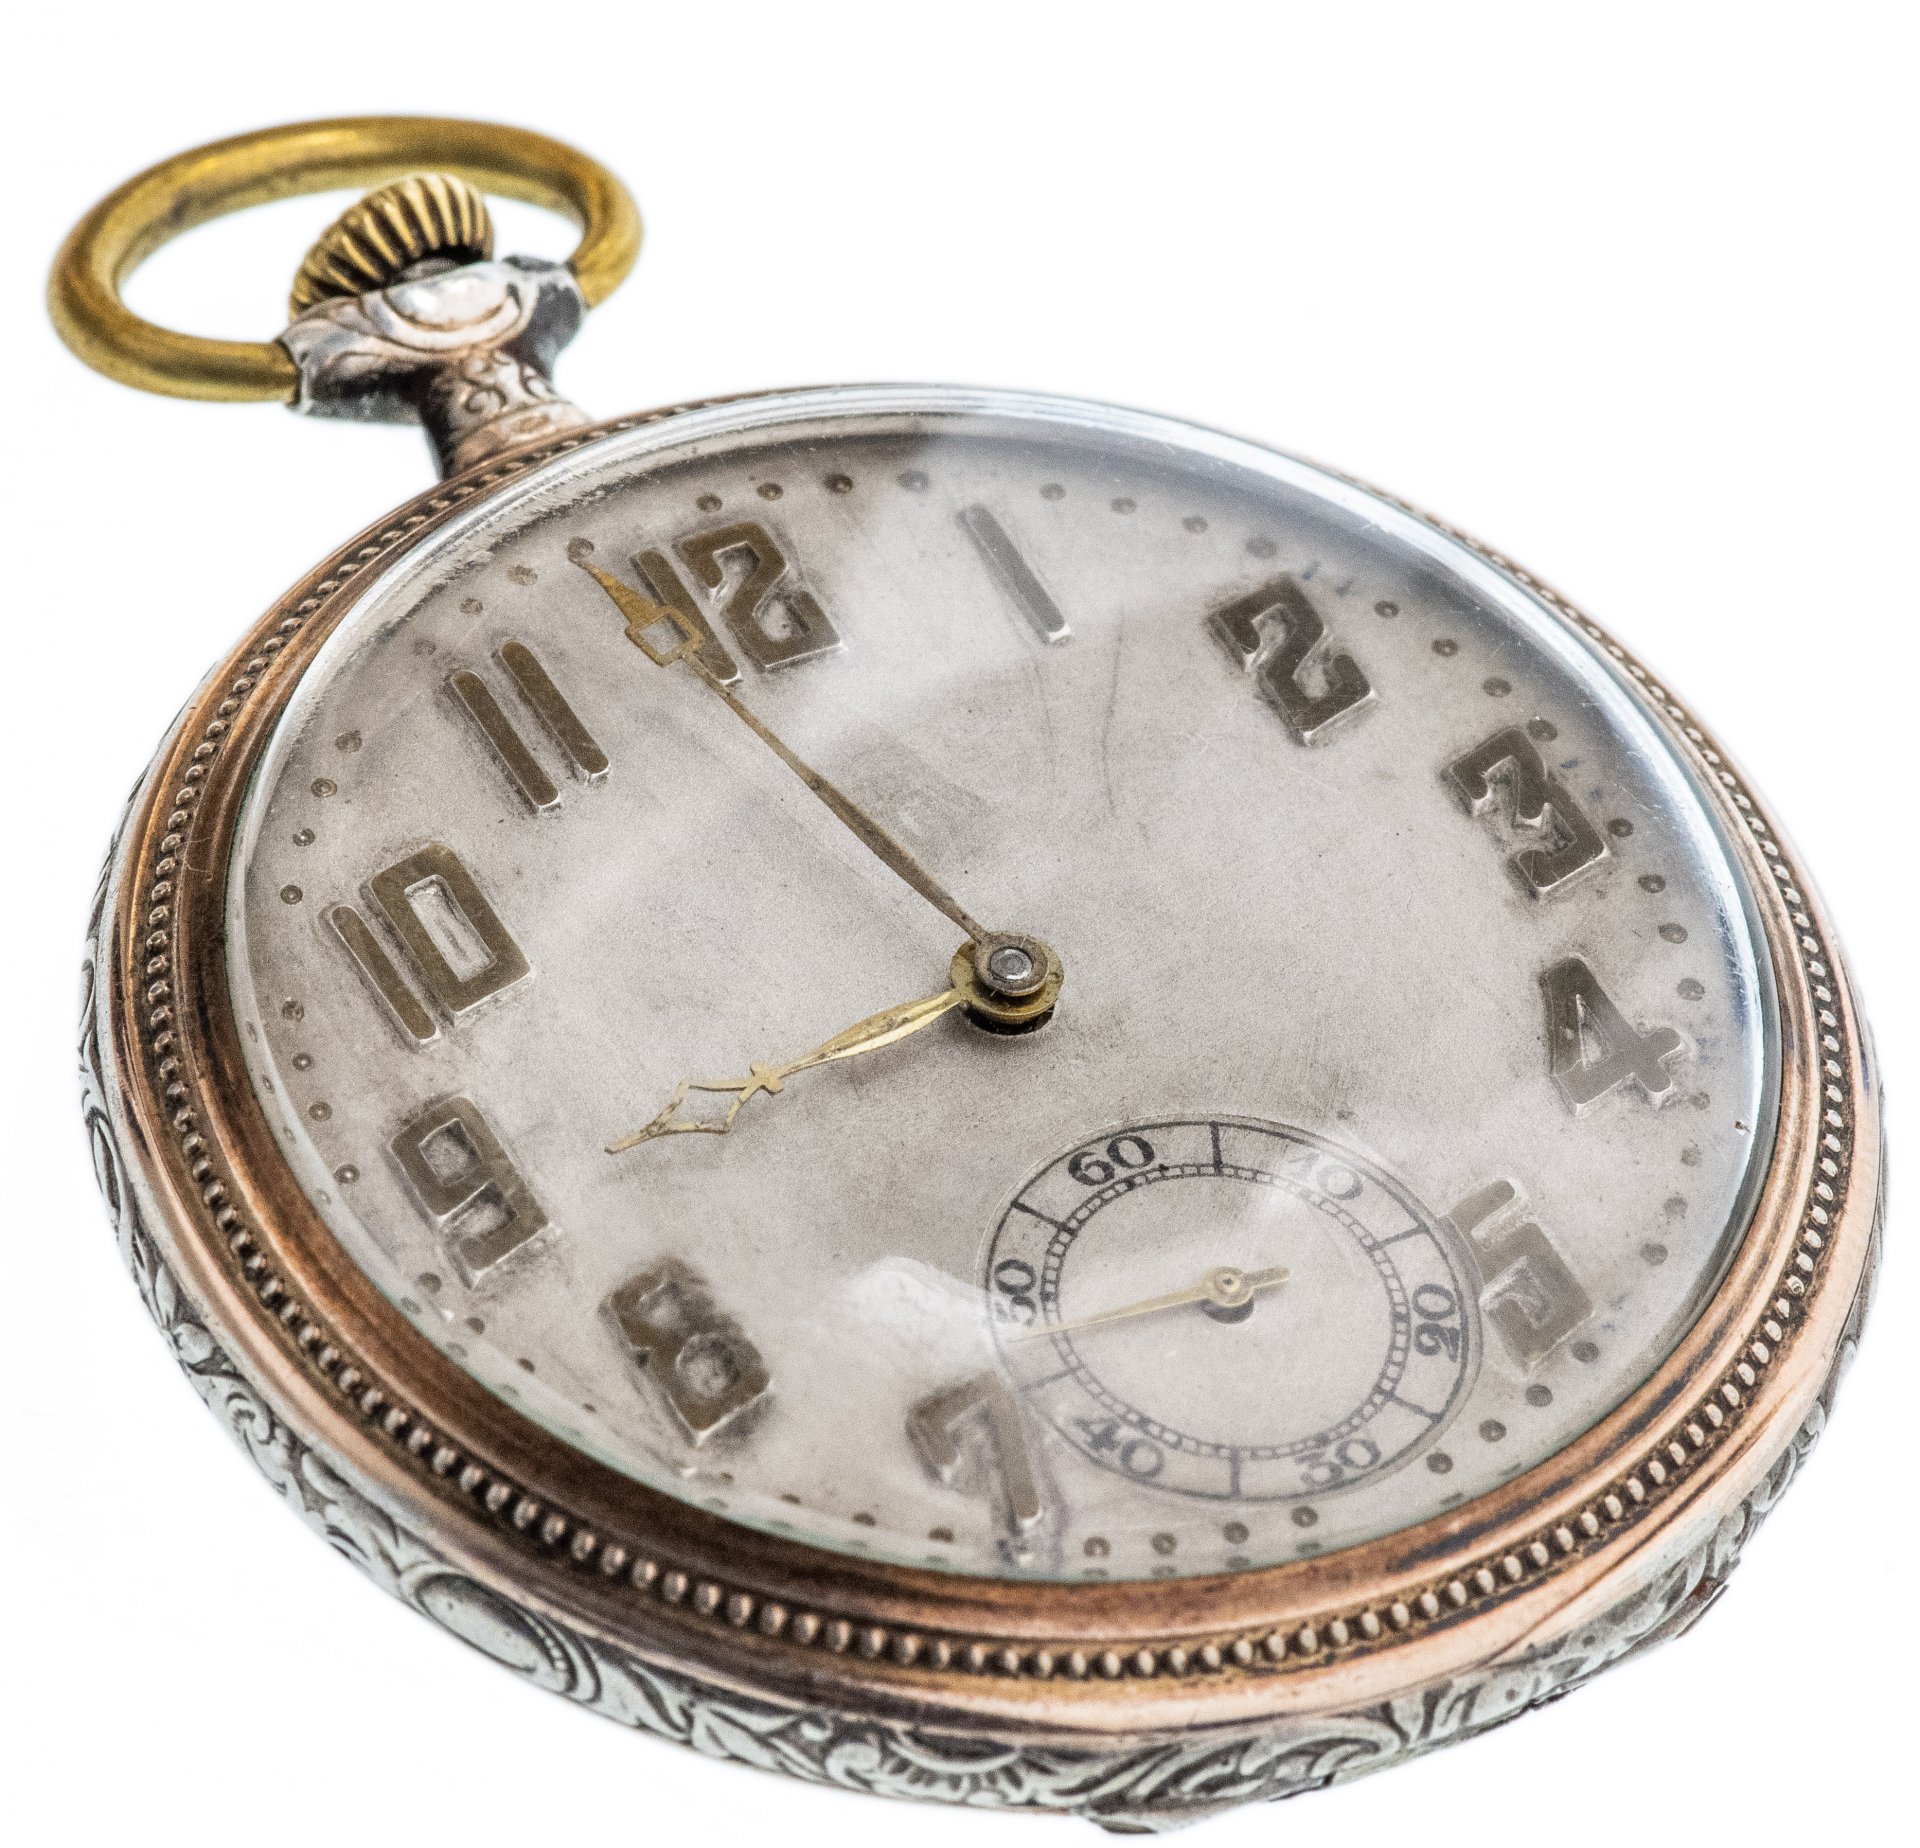 Карманные часы купить на авито. Швейцарские карманные часы серебро Gallonne. Карманные часы Galonne Швейцария. Часы карманные швейцарские Galonne серебро 0.800 проба. Часы Galonne карманные серебряные.